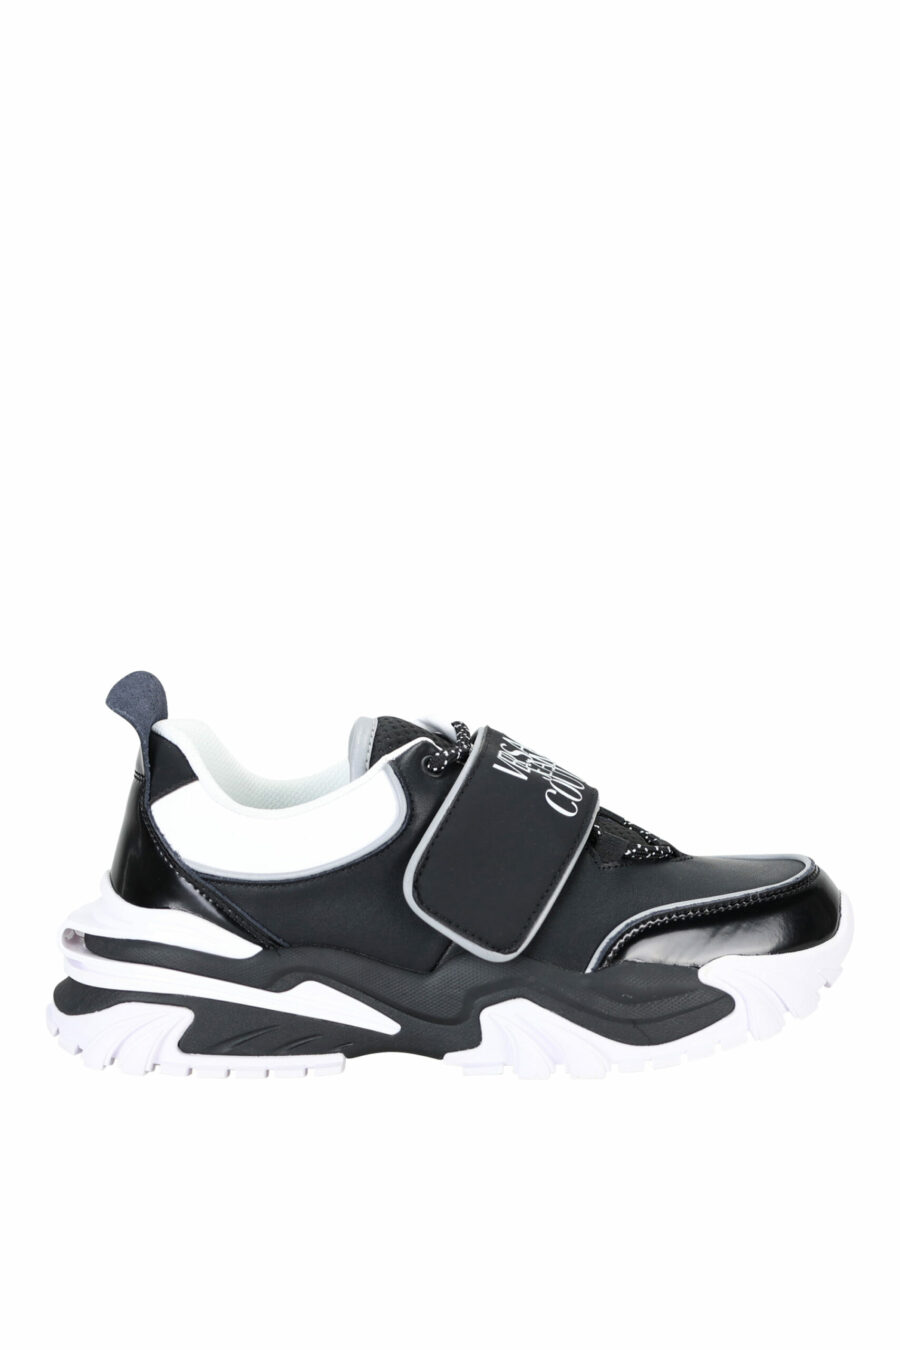 Zapatillas negras con blanco mix y logo en velcro - 808052019490008 scaled